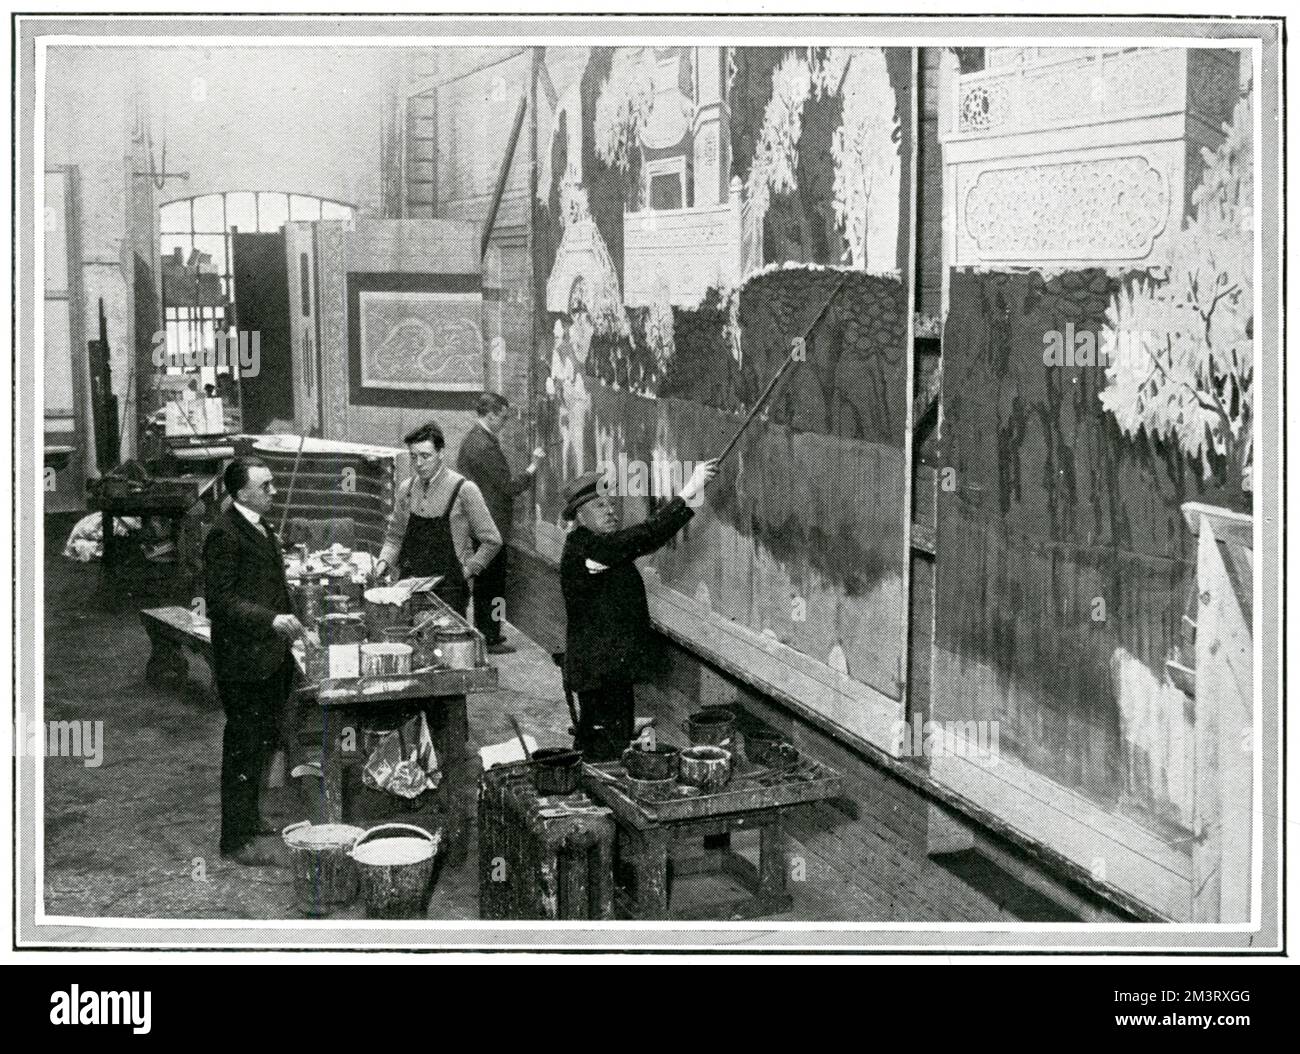 Famoso pittore scenografico, Joseph Harker, visto nel suo studio con uno dei suoi quattro figli. Harker è stata la principale azienda per la pittura di paesaggio nel mondo del teatro londinese. Data: 1924 Foto Stock